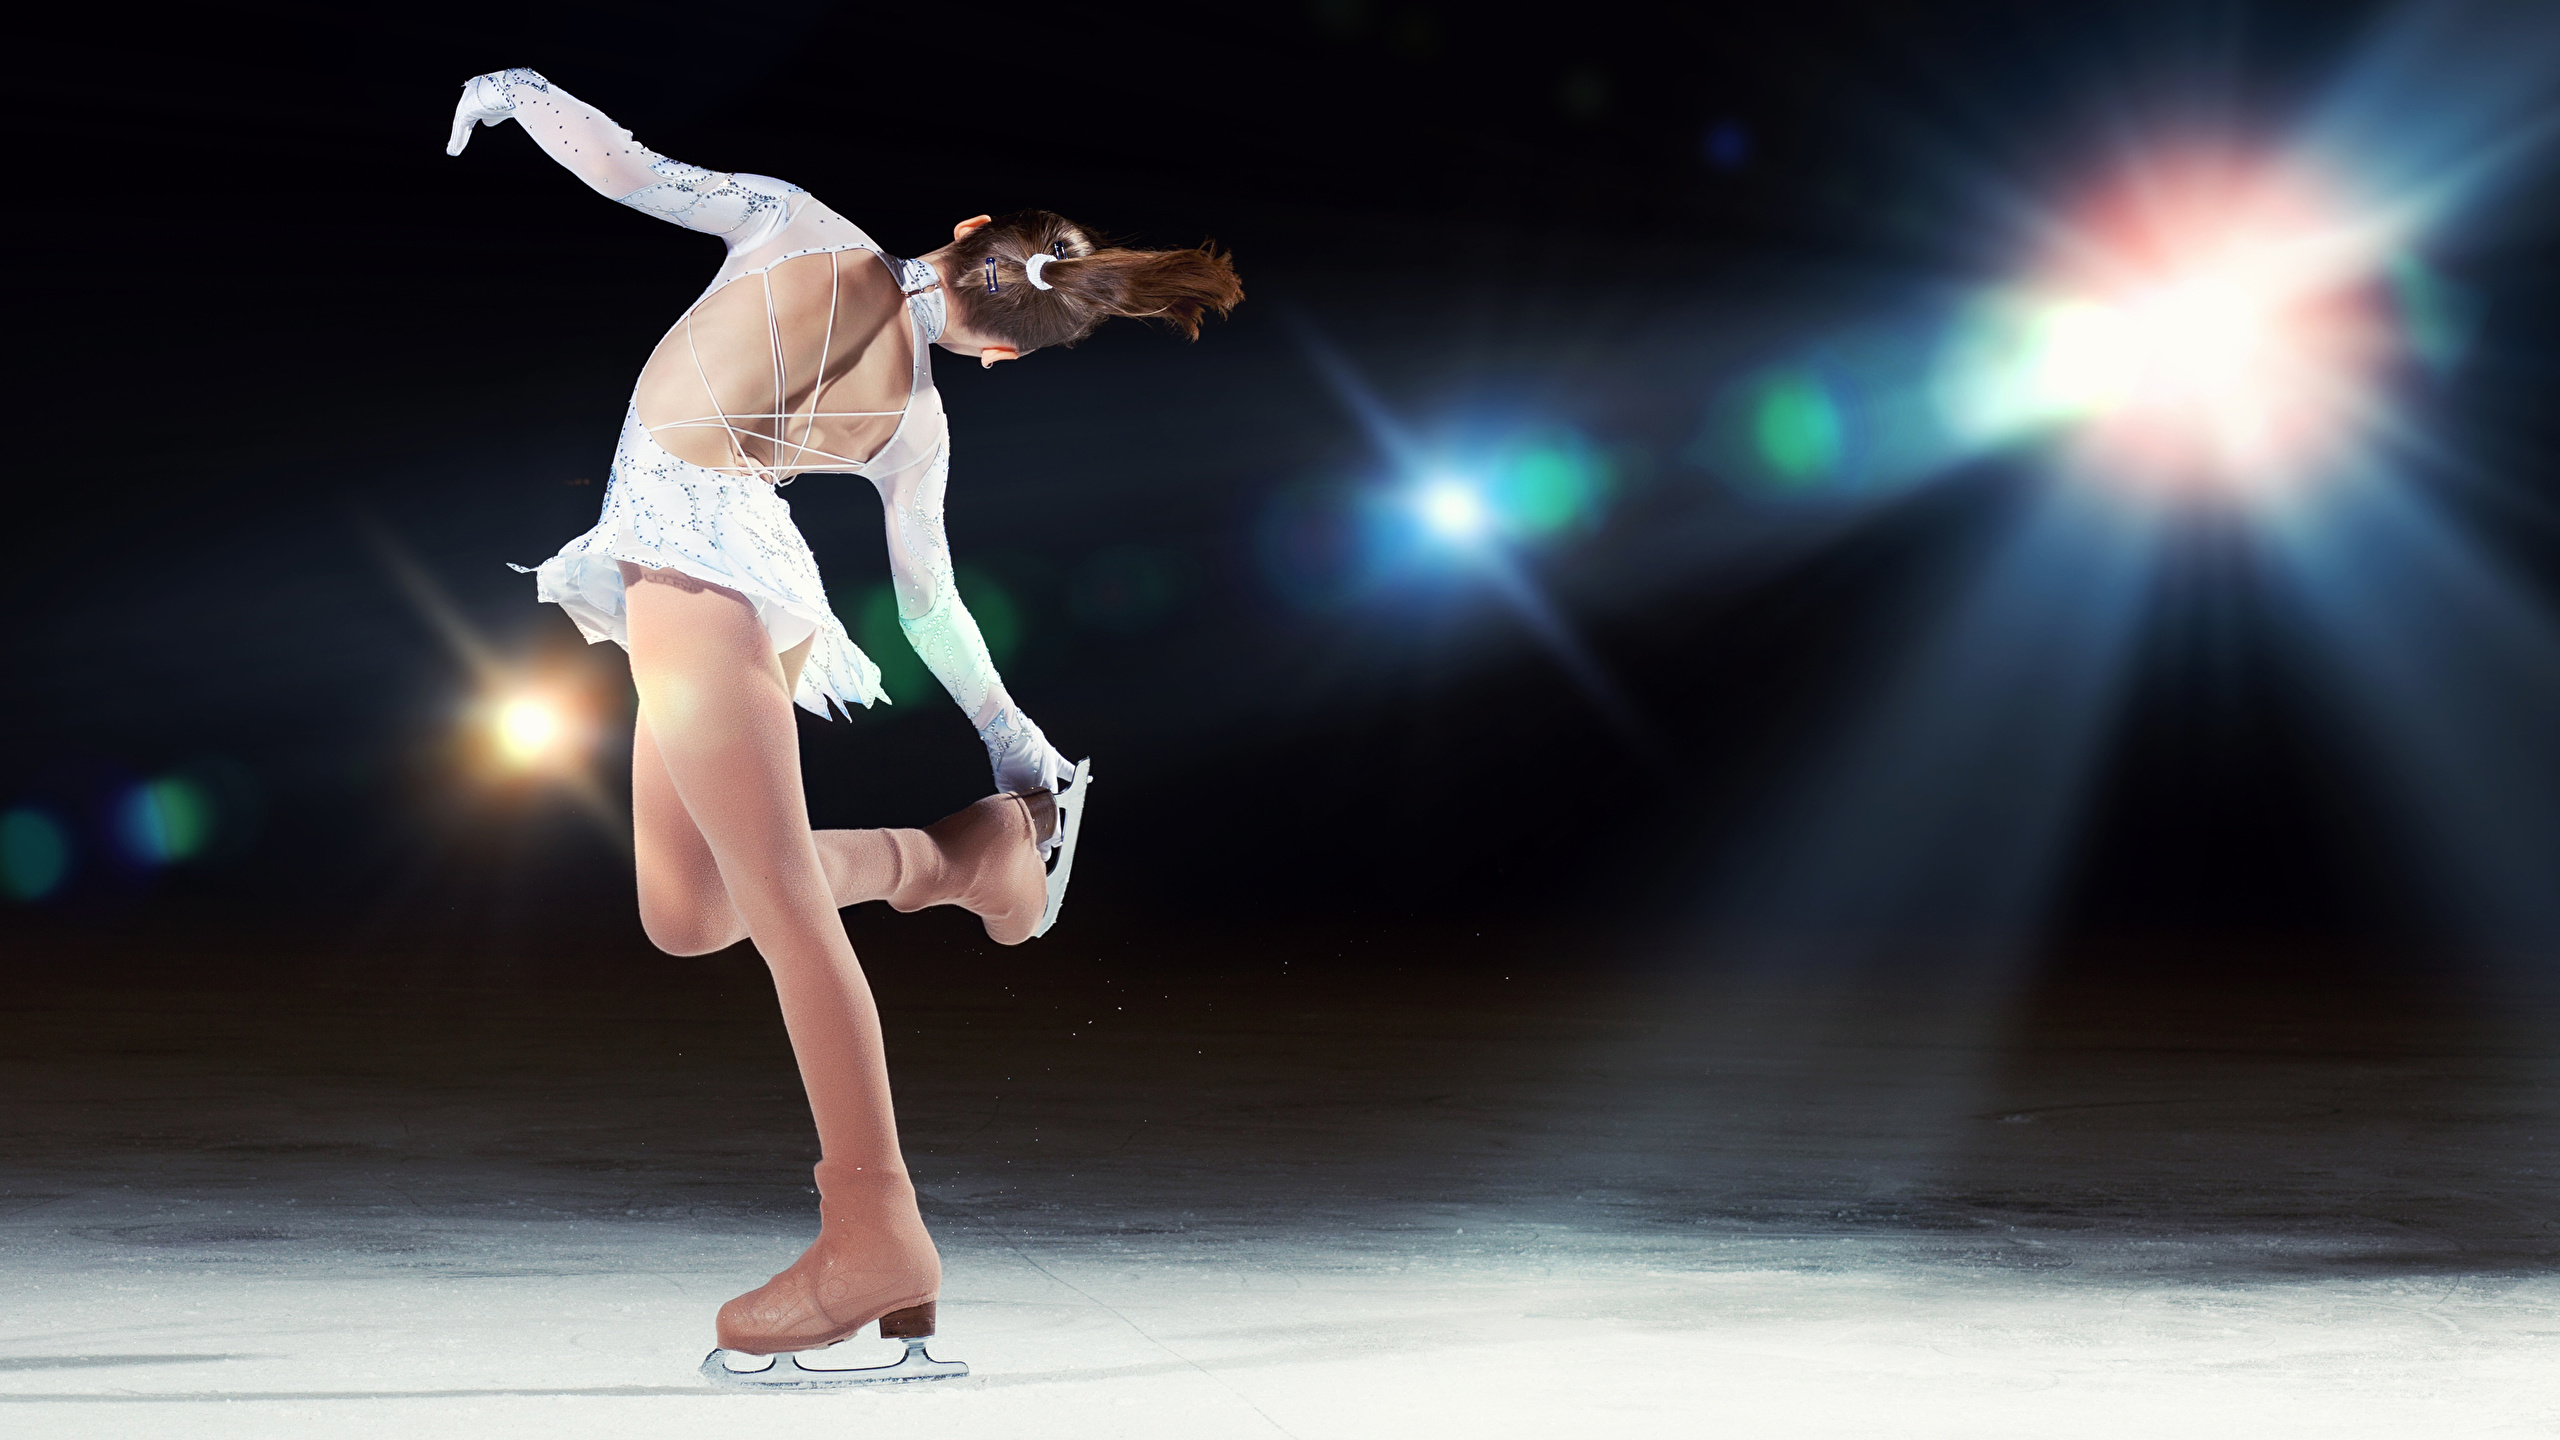 壁紙 2560x1440 氷 ダンス 茶色の髪の女性 スケート靴 背中 少女 スポーツ ダウンロード 写真